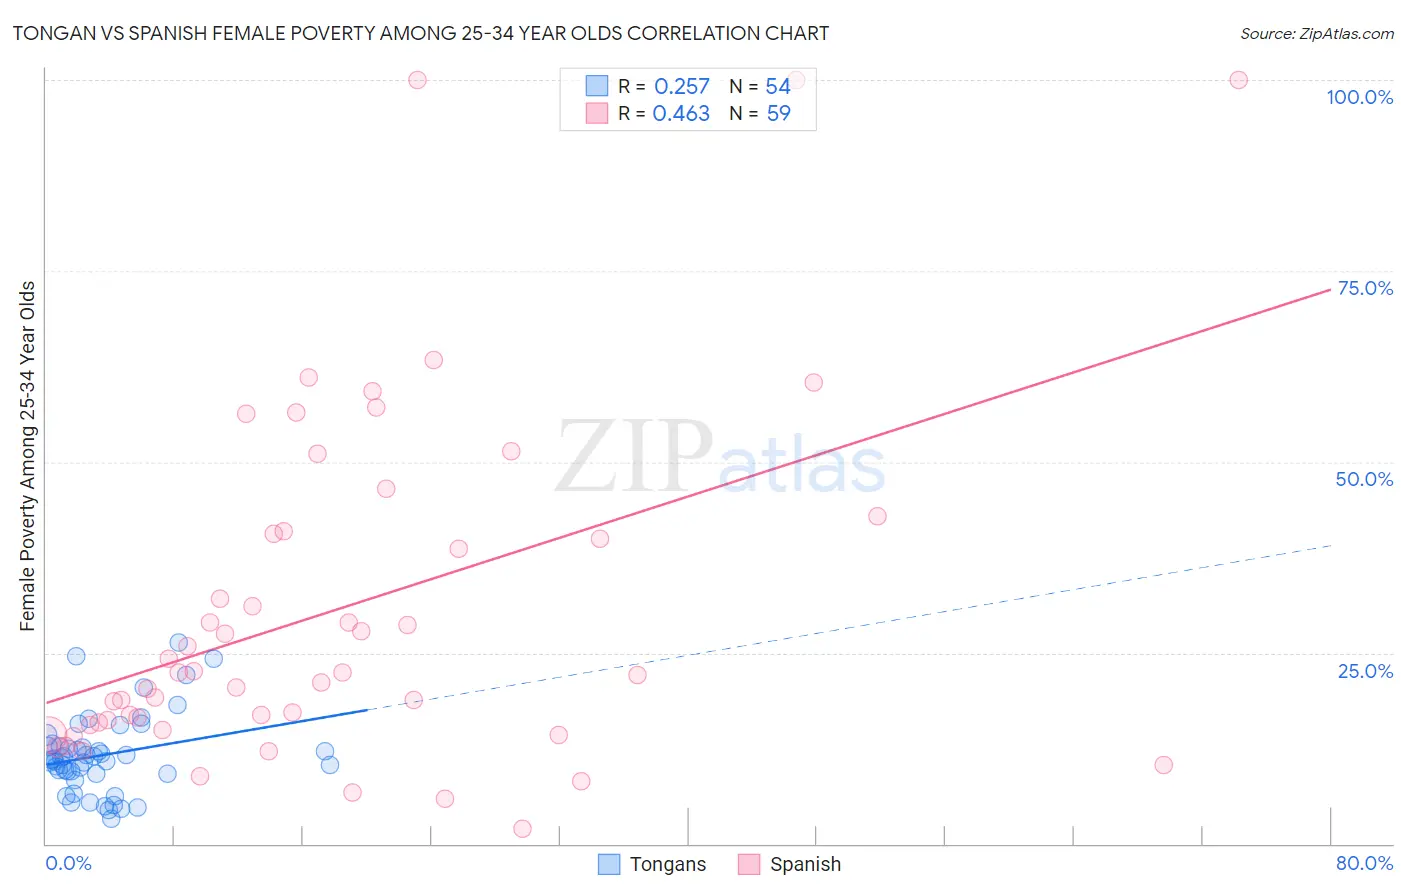 Tongan vs Spanish Female Poverty Among 25-34 Year Olds